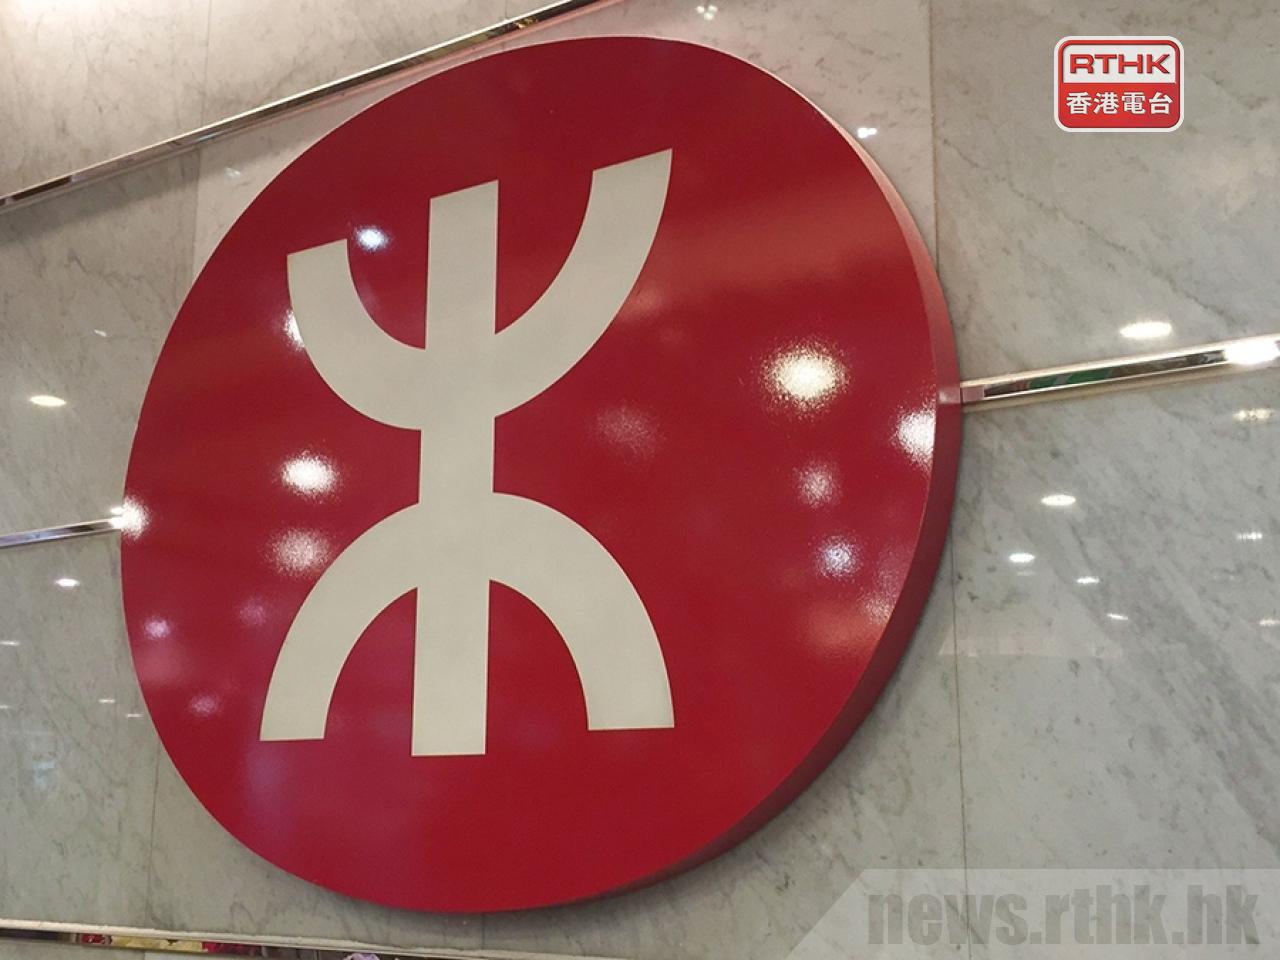 MTR fare rise of 3.09 percent kicks in